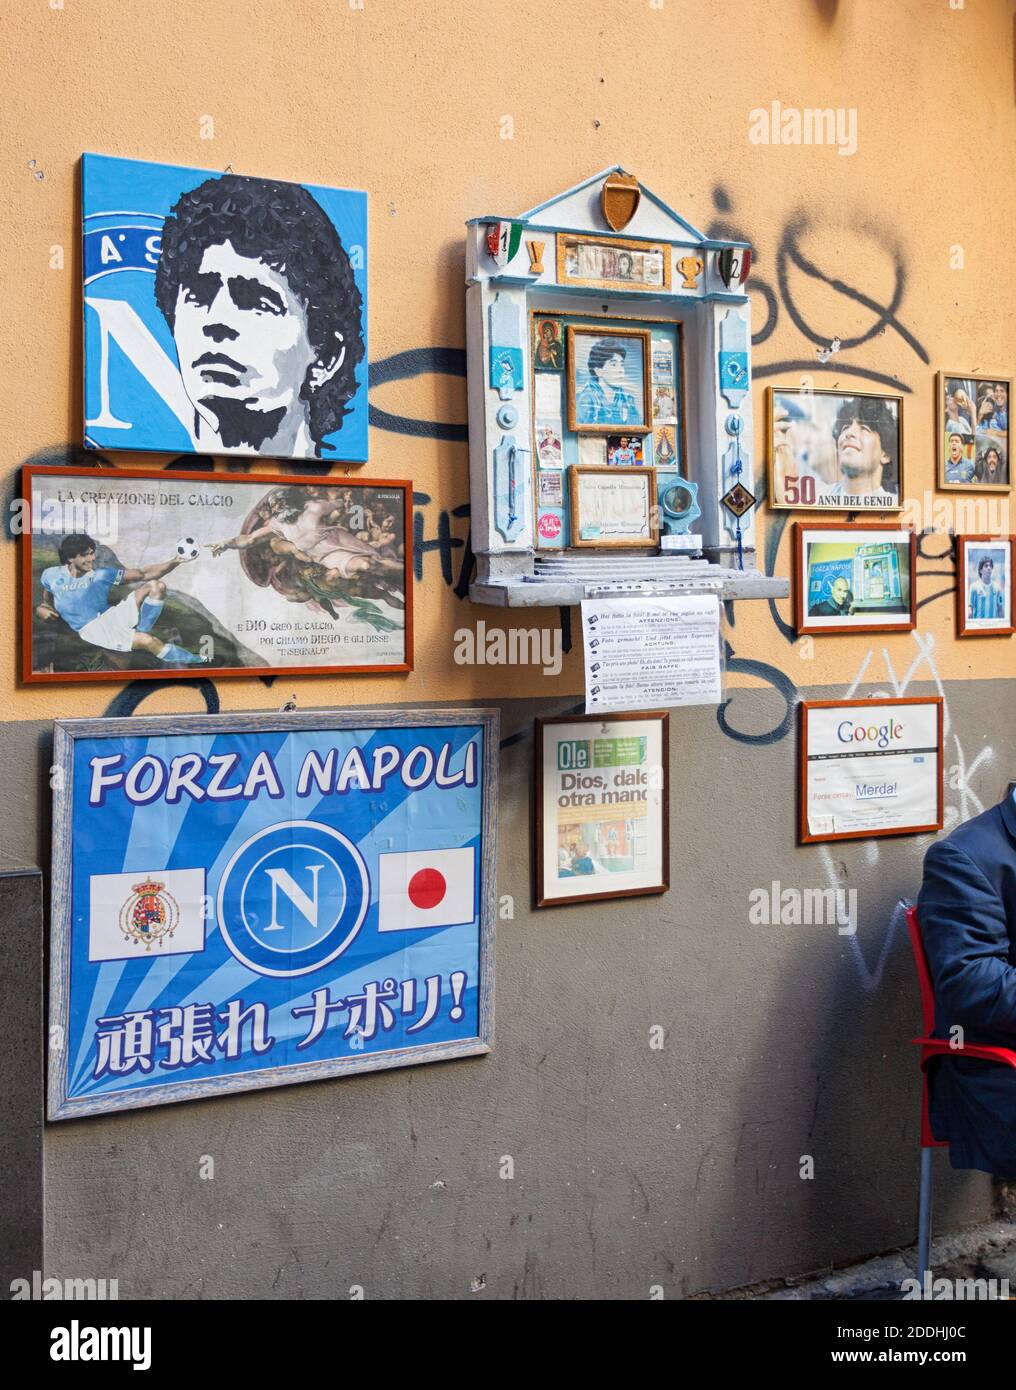 Napoli, Italia - 10 ottobre 2013: Altare di Maradona fuori dal bar Nilo, ha portato la vetta del calcio europeo il Napoli vincendo due titoli di campionato Foto Stock